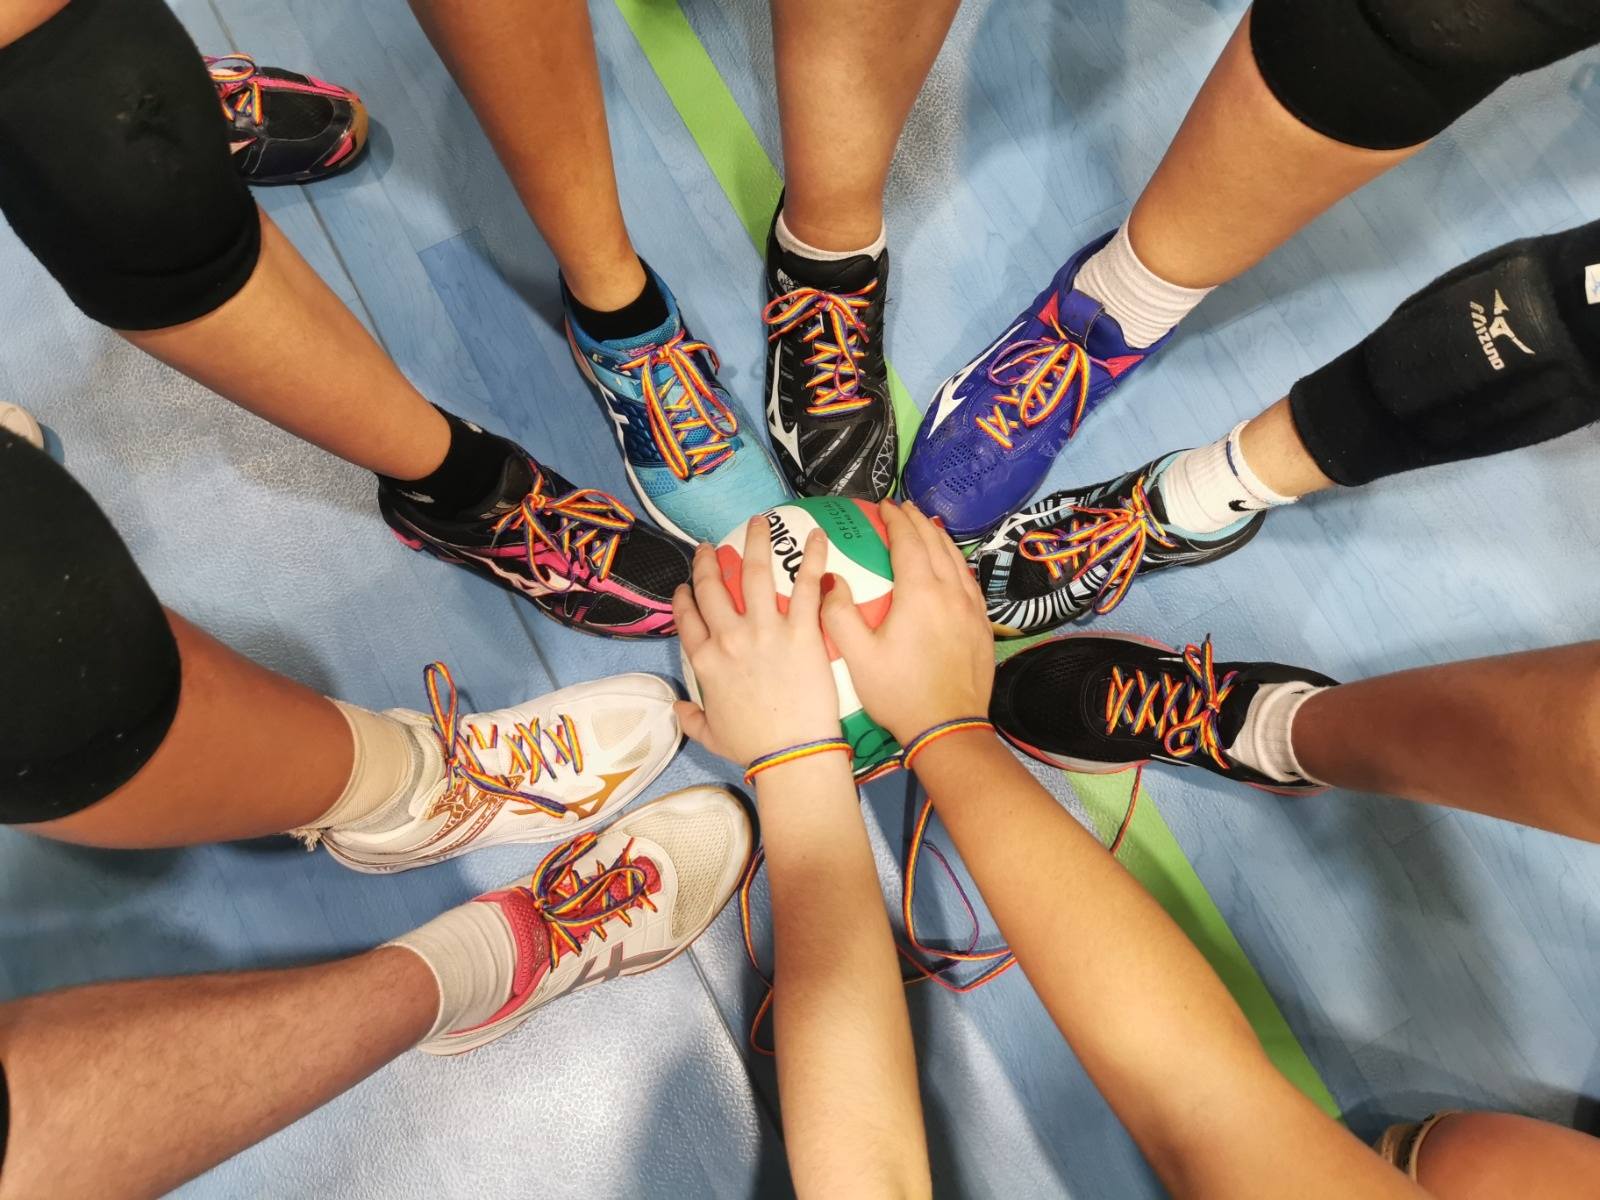 El Ayuntamiento de Fuenlabrada repartirá un millar de pares de cordones arcoíris a entidades deportivas como parte del programa 'Sin respeto no hay deporte', en conmemoración del Día Internacional contra la Homofobia en el Deporte.